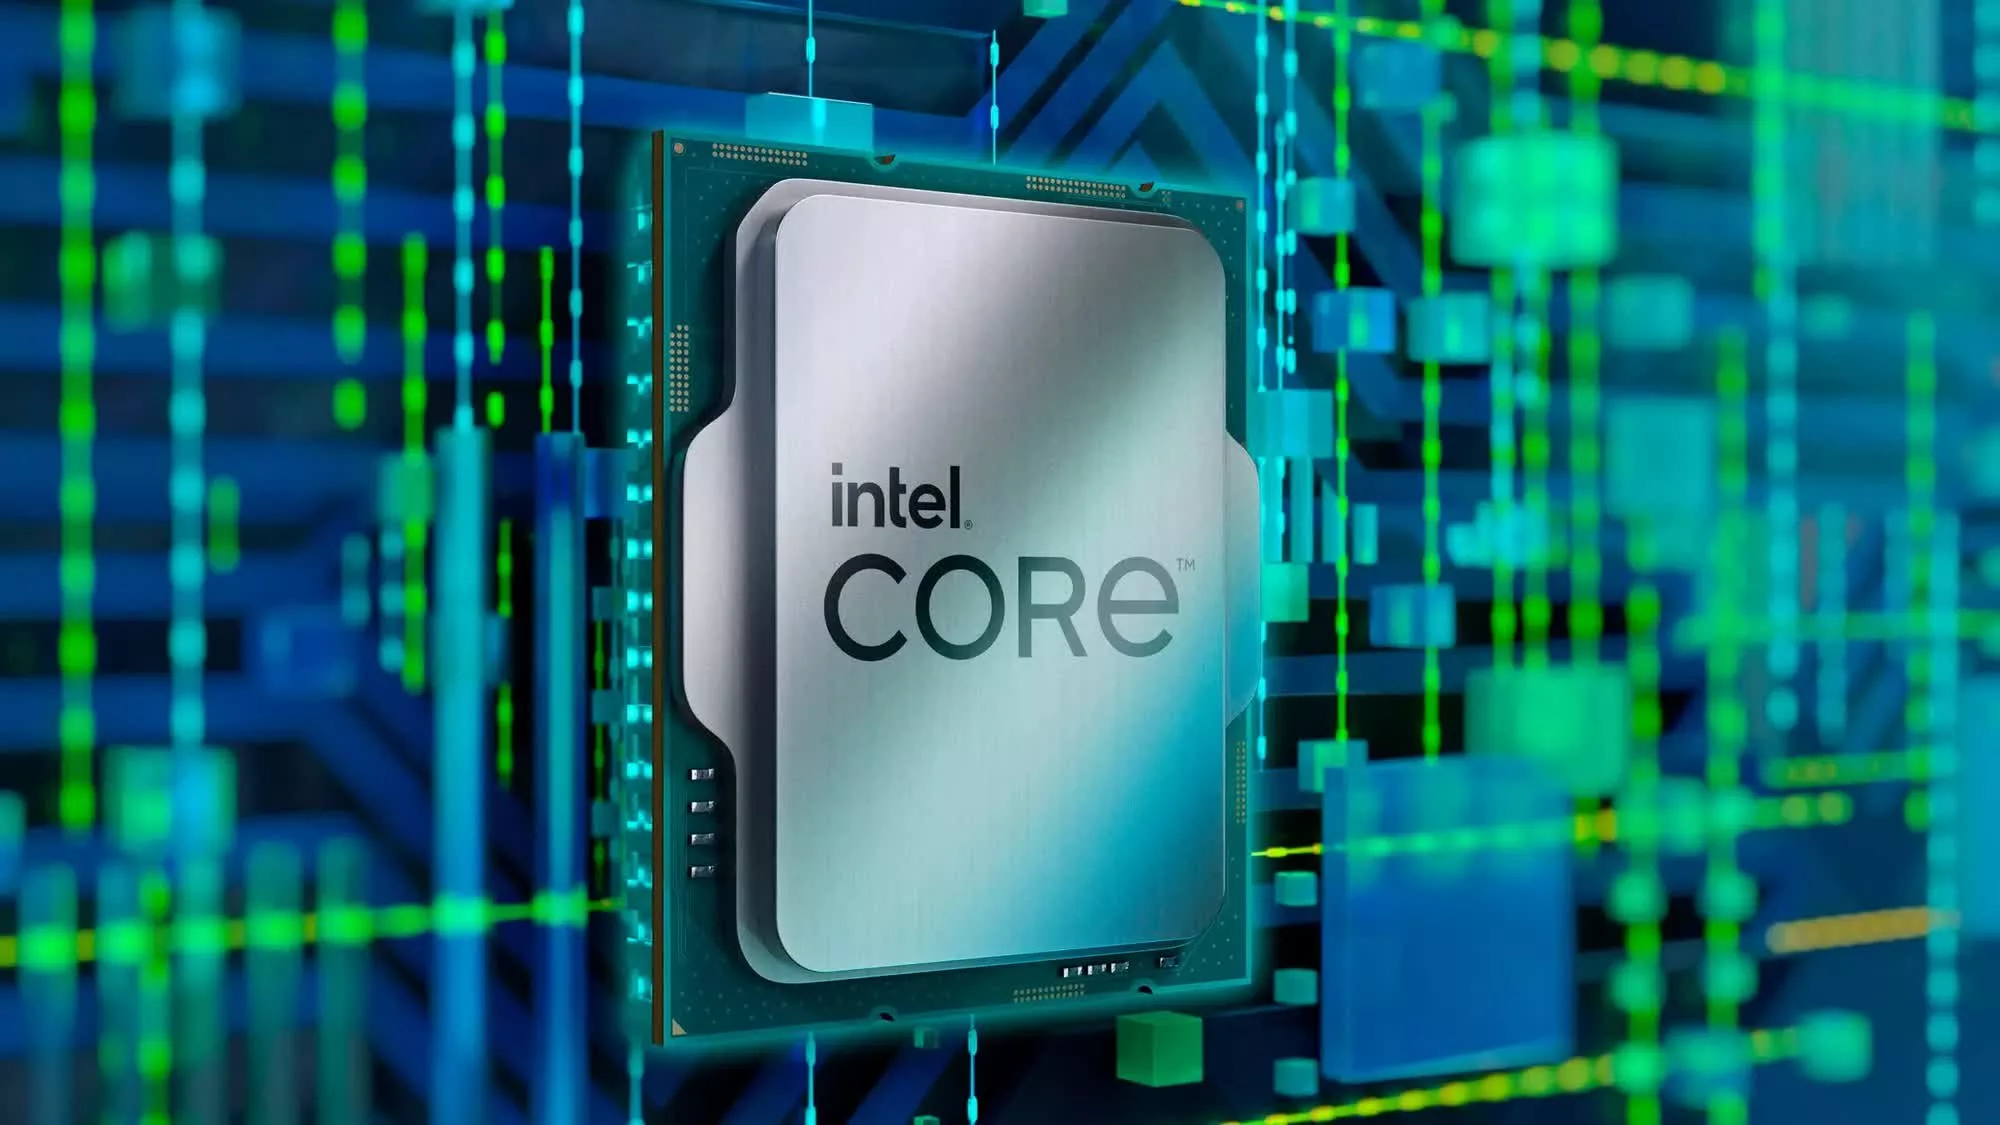 Las CPU Lunar Lake de Intel podrían ofrecer un rendimiento multiproceso un 50% más rápido que Meteor Lake, incluso sin hyperthreading